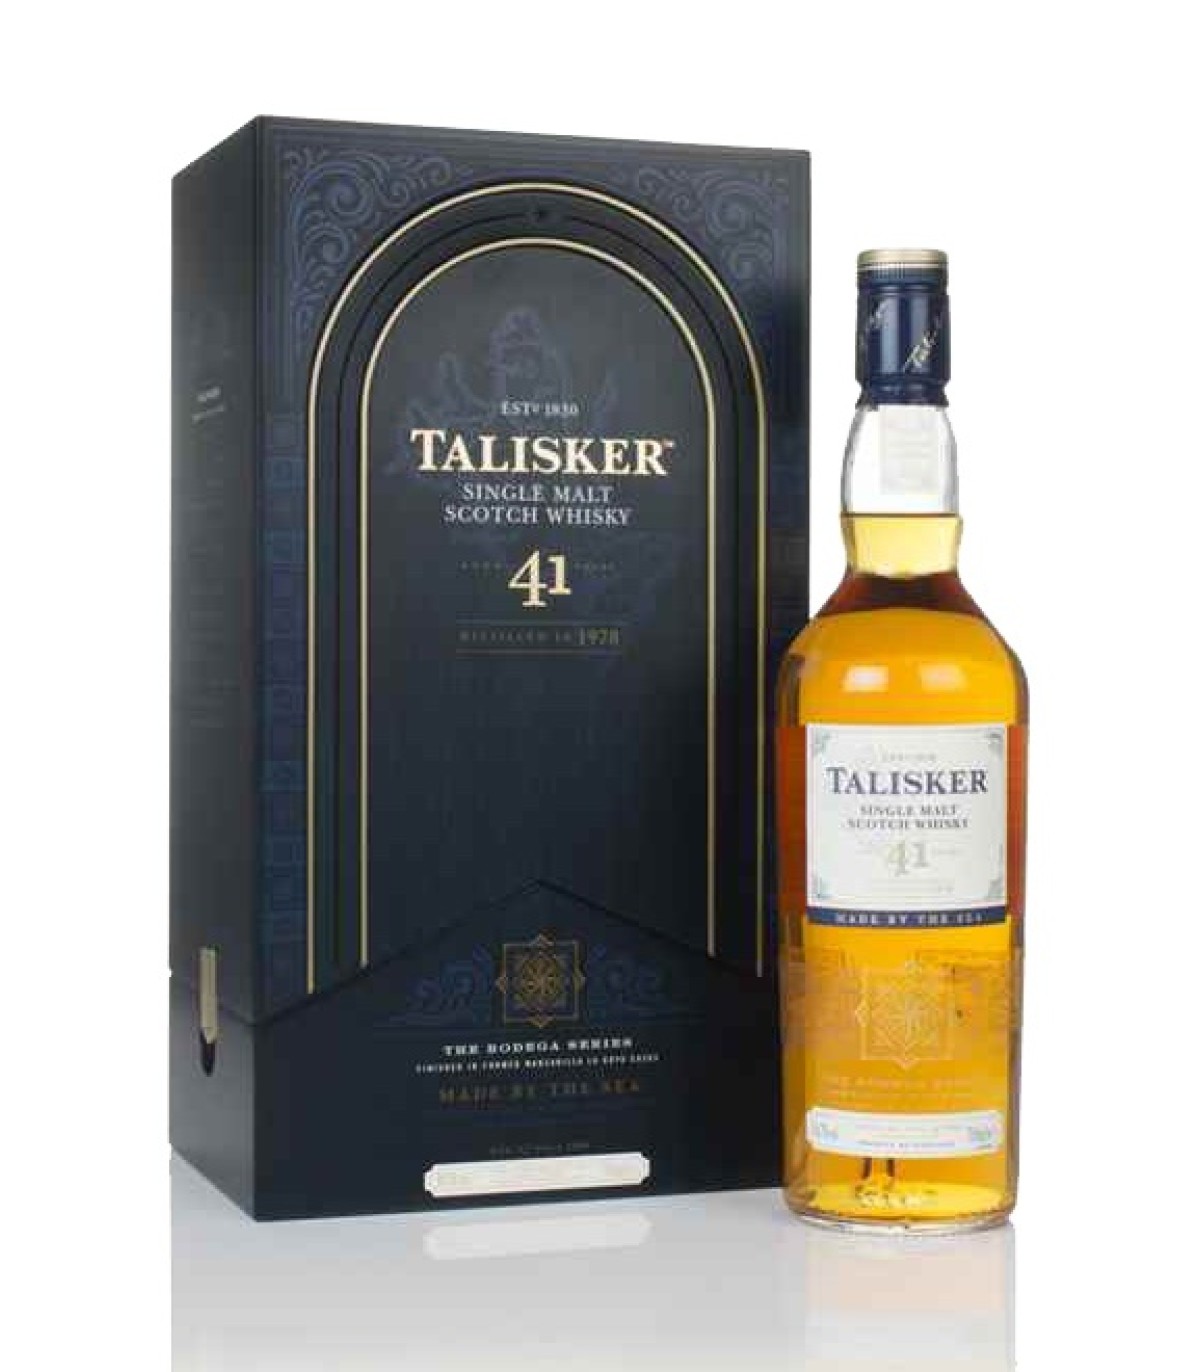 Whisky Talisker 41 yeats 1978 - Bottling